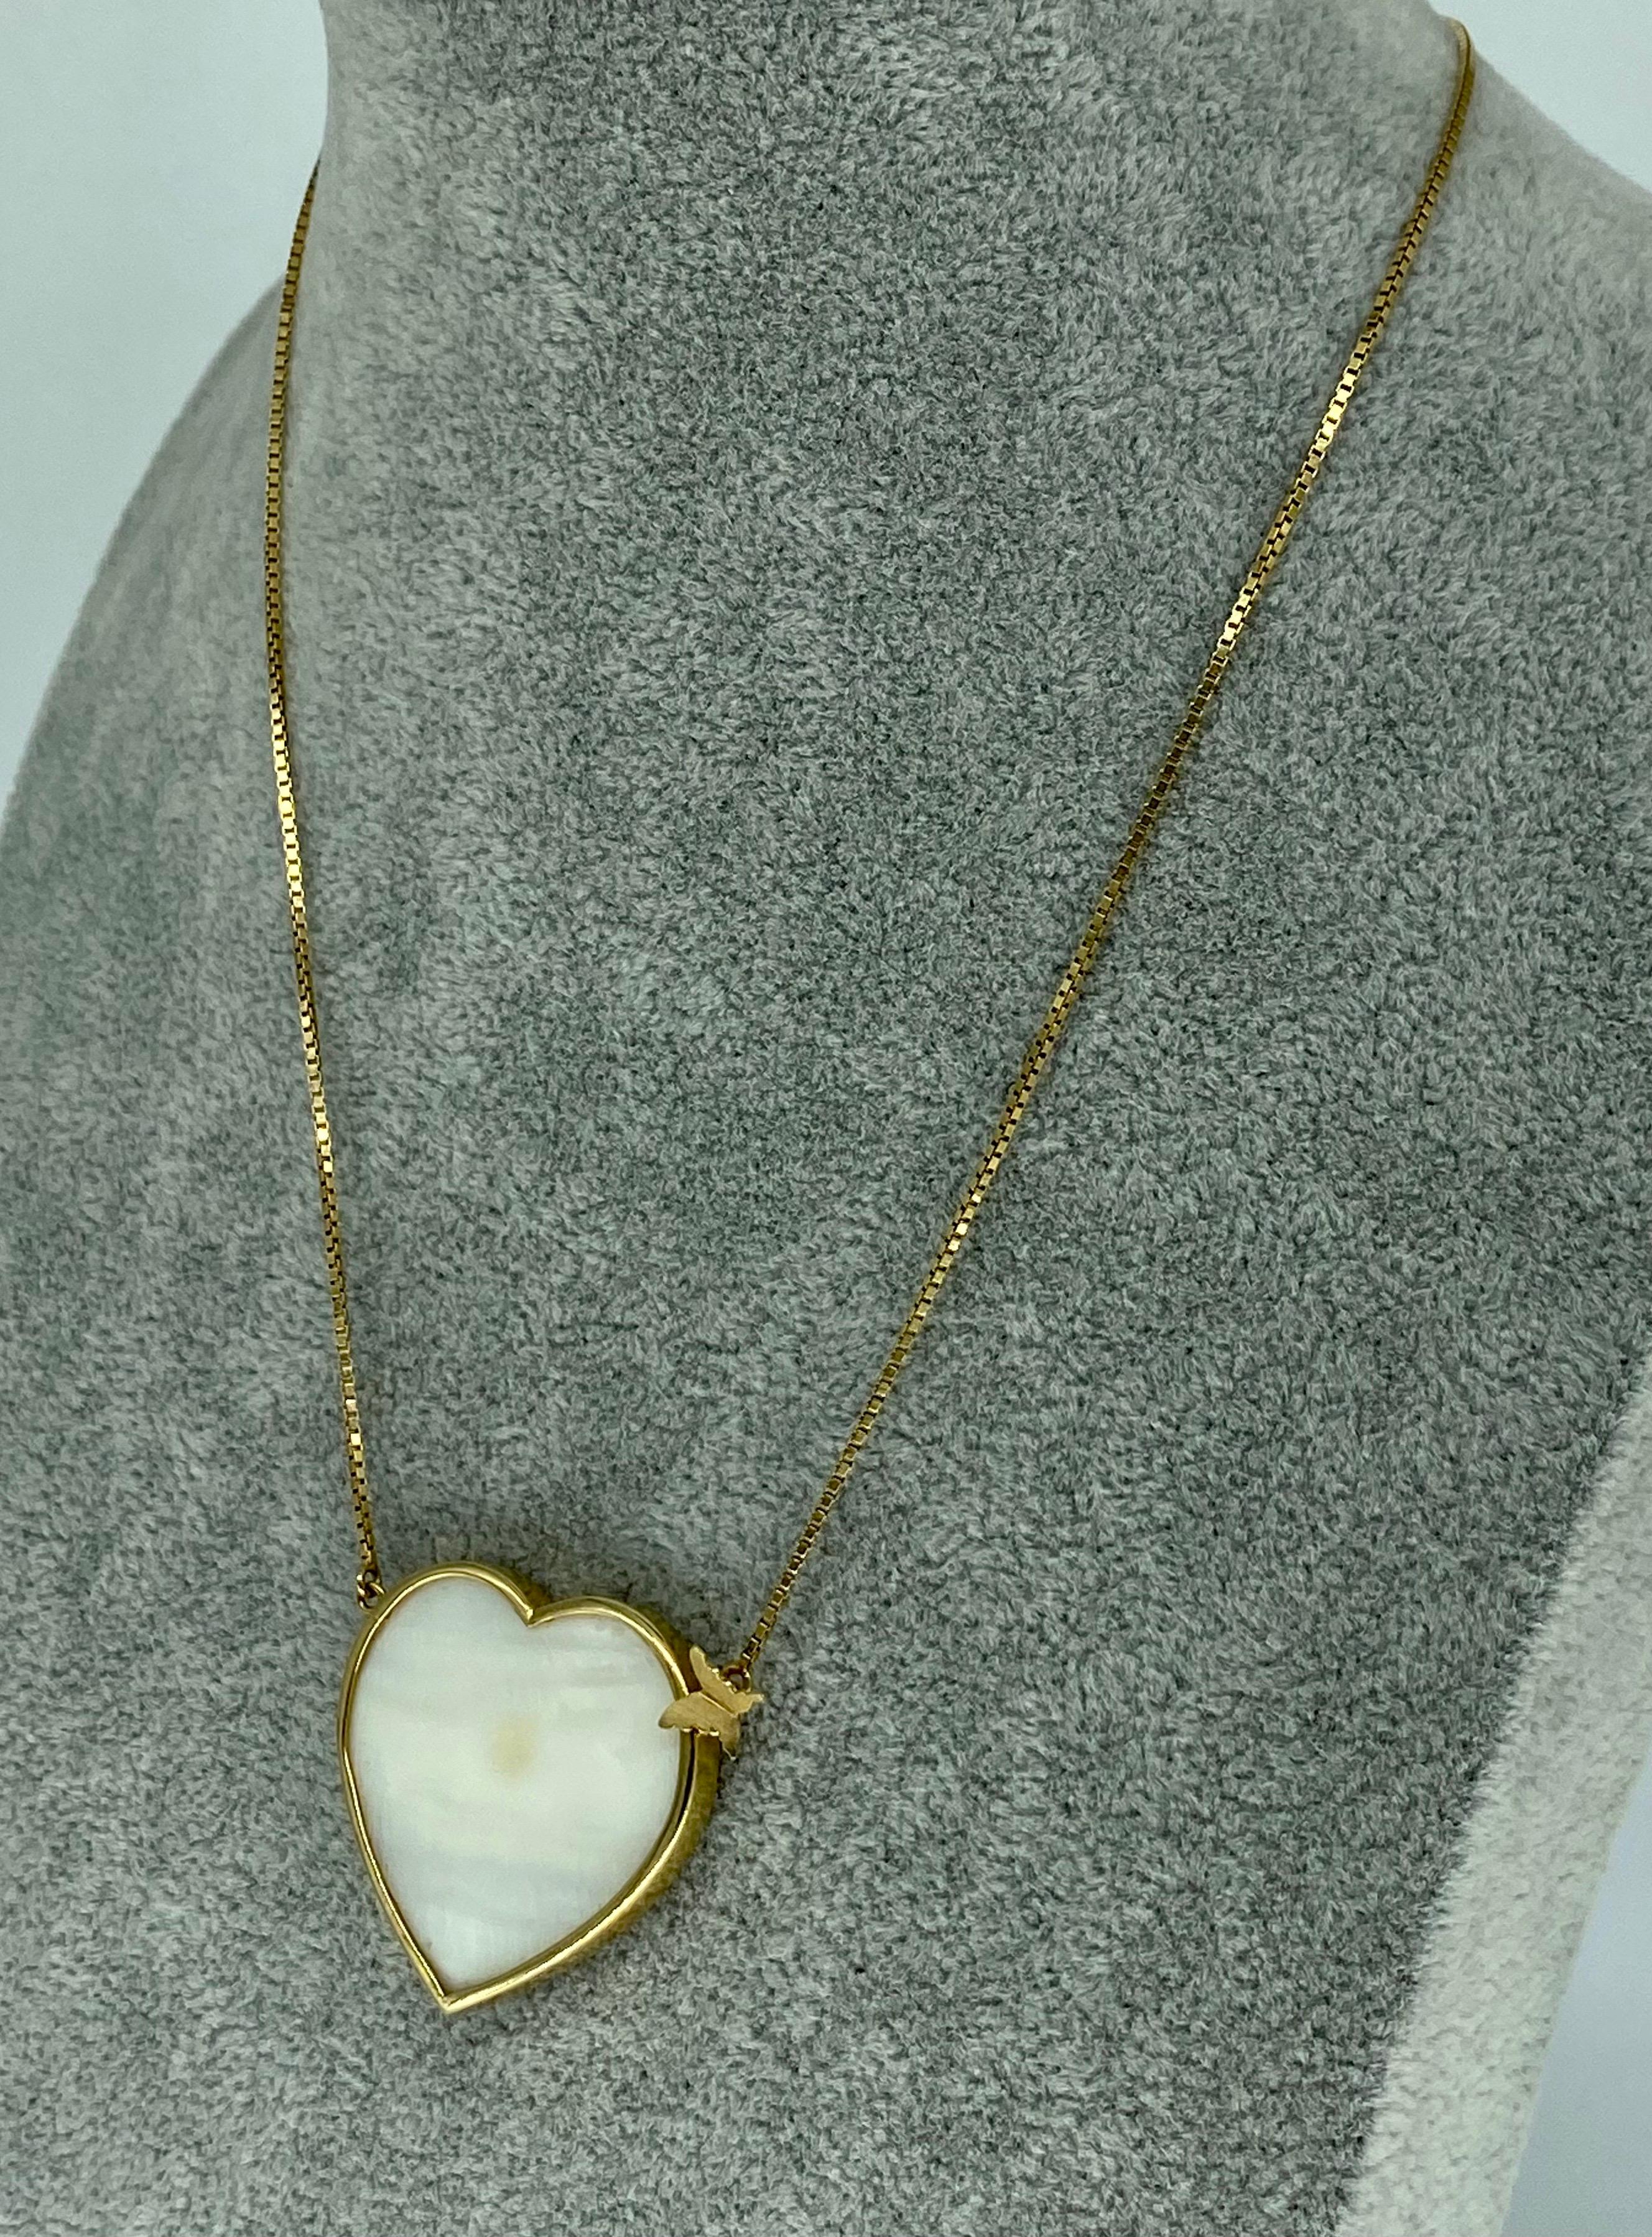 Designer Patricia Jias 2'x2' Collier nœud papillon cœur perle grand modèle. Le célèbre designer brésilien est de retour avec un autre collier exceptionnel. Le collier comporte une grande perle en forme de cœur qui mesure 2 pouces sur 2 pouces. Le